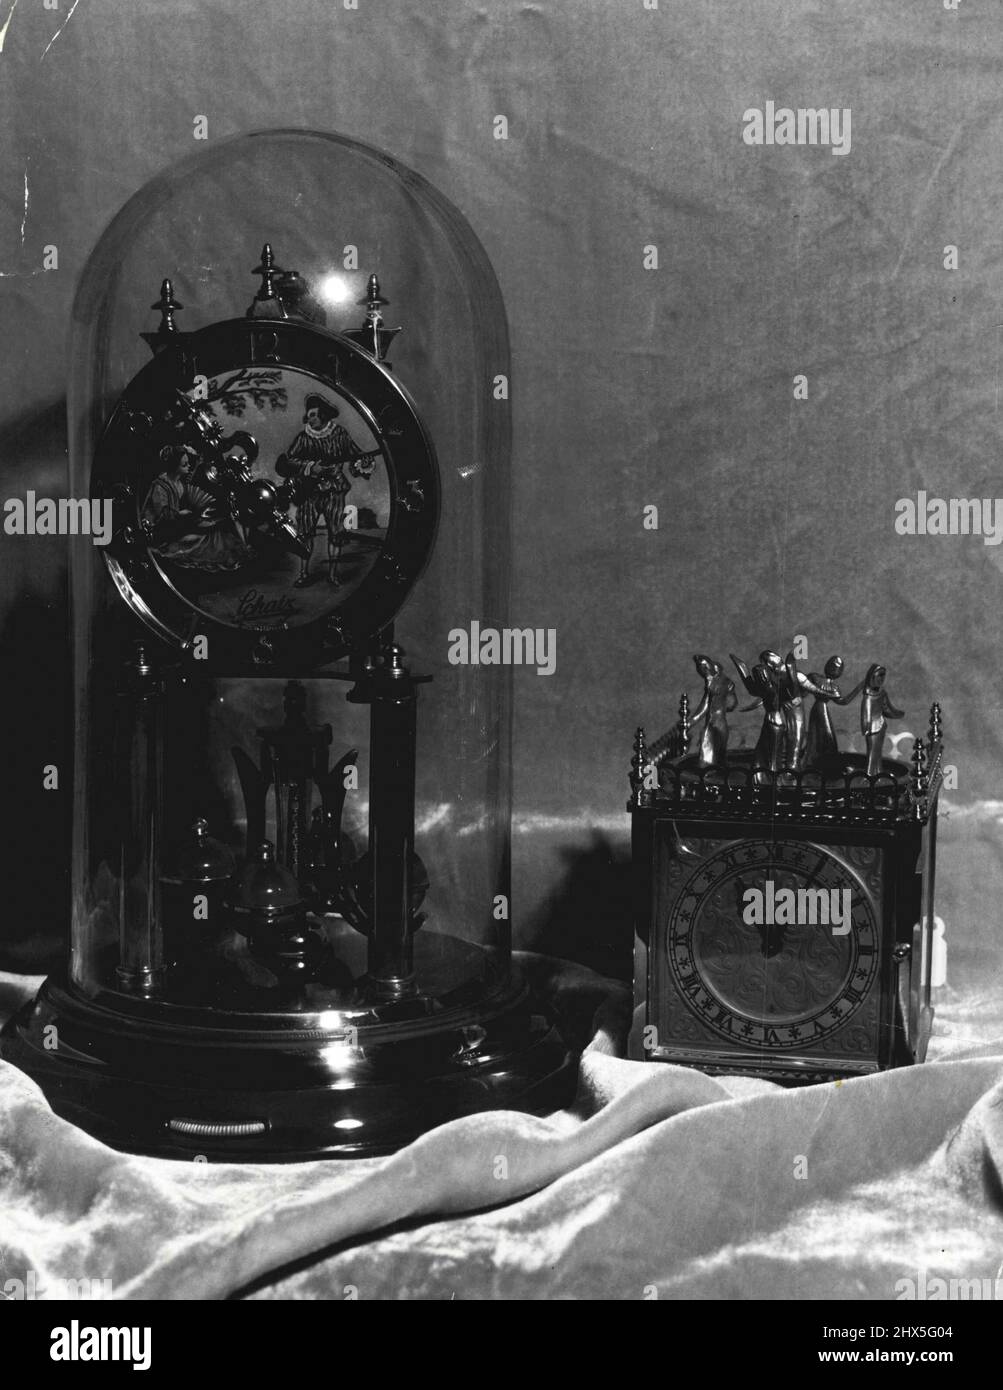 Lebendige Emaillierung auf dem Zifferblatt, Arbeiten und Sockel zeichnen diese 400-Tage-deutsche Uhr aus. Geschützt vor Staub in seiner Glaskuppel, steht es etwa einen Fuß hoch und kostet £13/17/6. 2.Mai 1955. Stockfoto